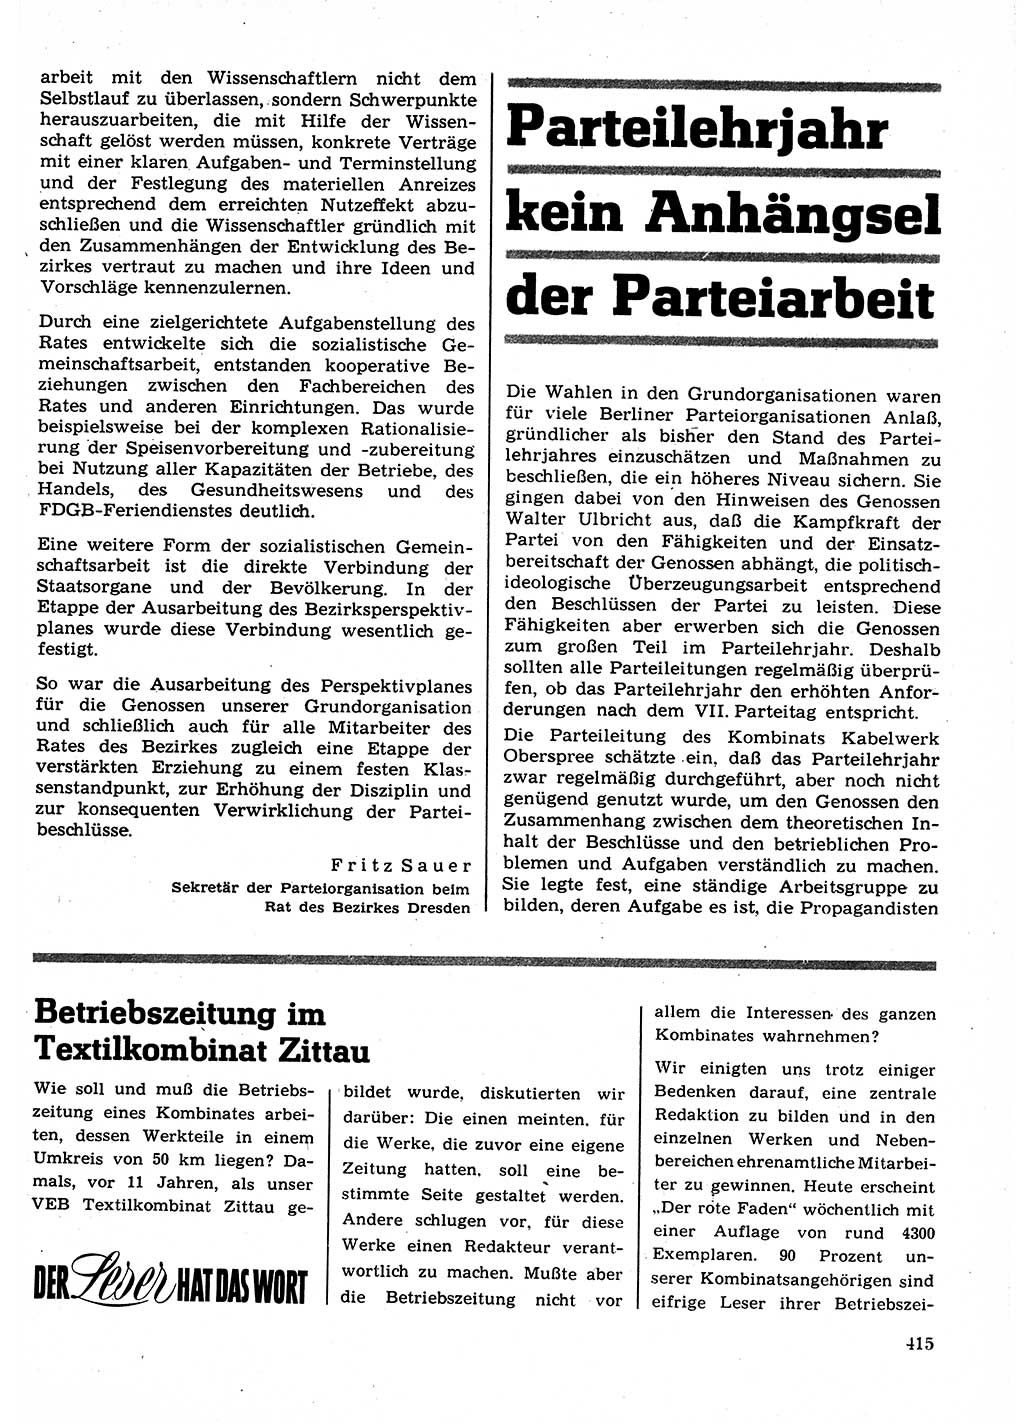 Neuer Weg (NW), Organ des Zentralkomitees (ZK) der SED (Sozialistische Einheitspartei Deutschlands) für Fragen des Parteilebens, 23. Jahrgang [Deutsche Demokratische Republik (DDR)] 1968, Seite 415 (NW ZK SED DDR 1968, S. 415)